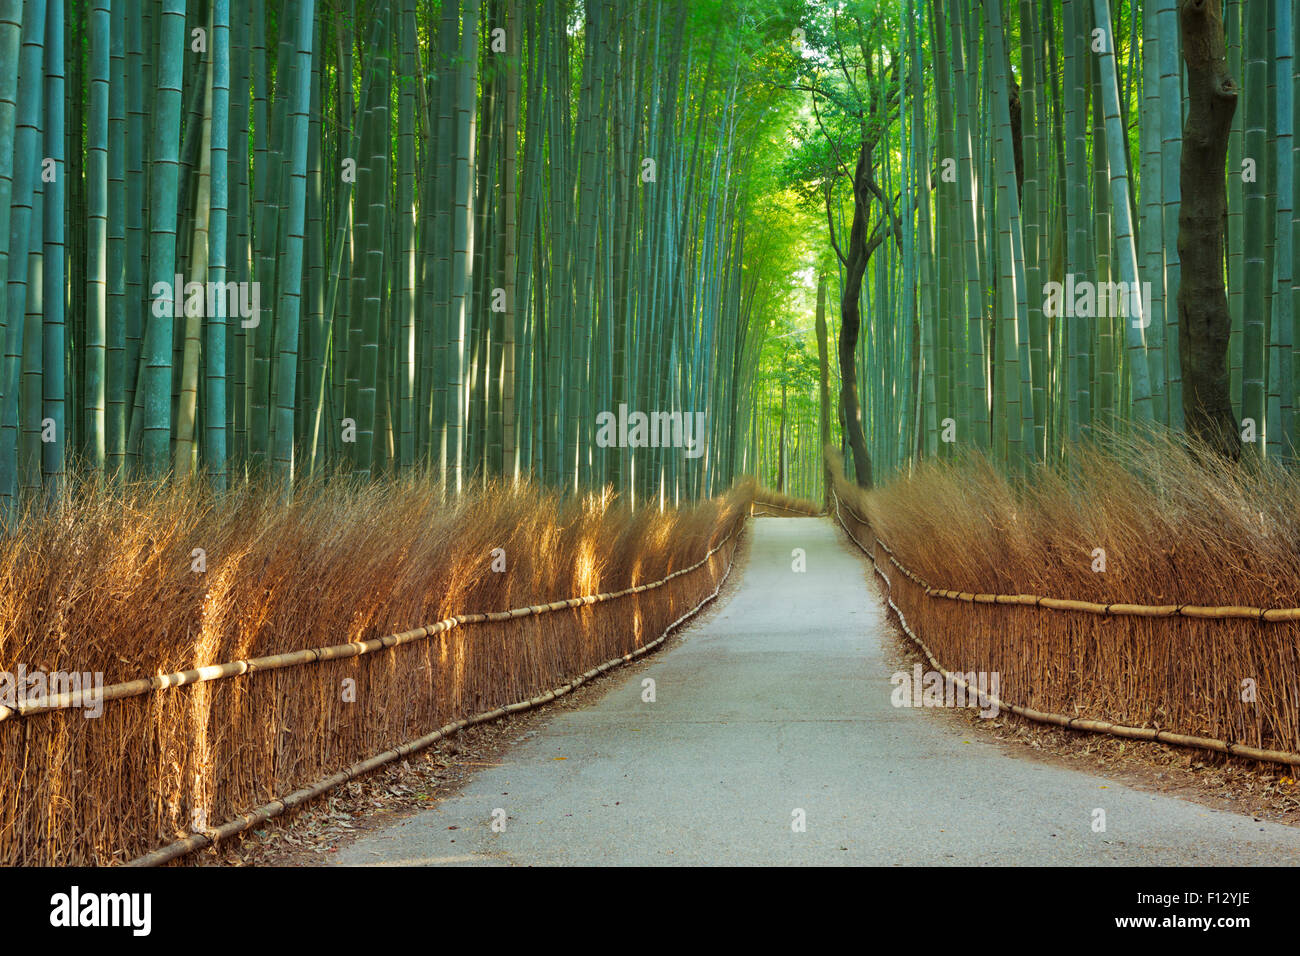 Un chemin à travers une forêt de bambous. Photographié à l'Arashiyama bamboo grove près de Kyoto, au Japon. Banque D'Images